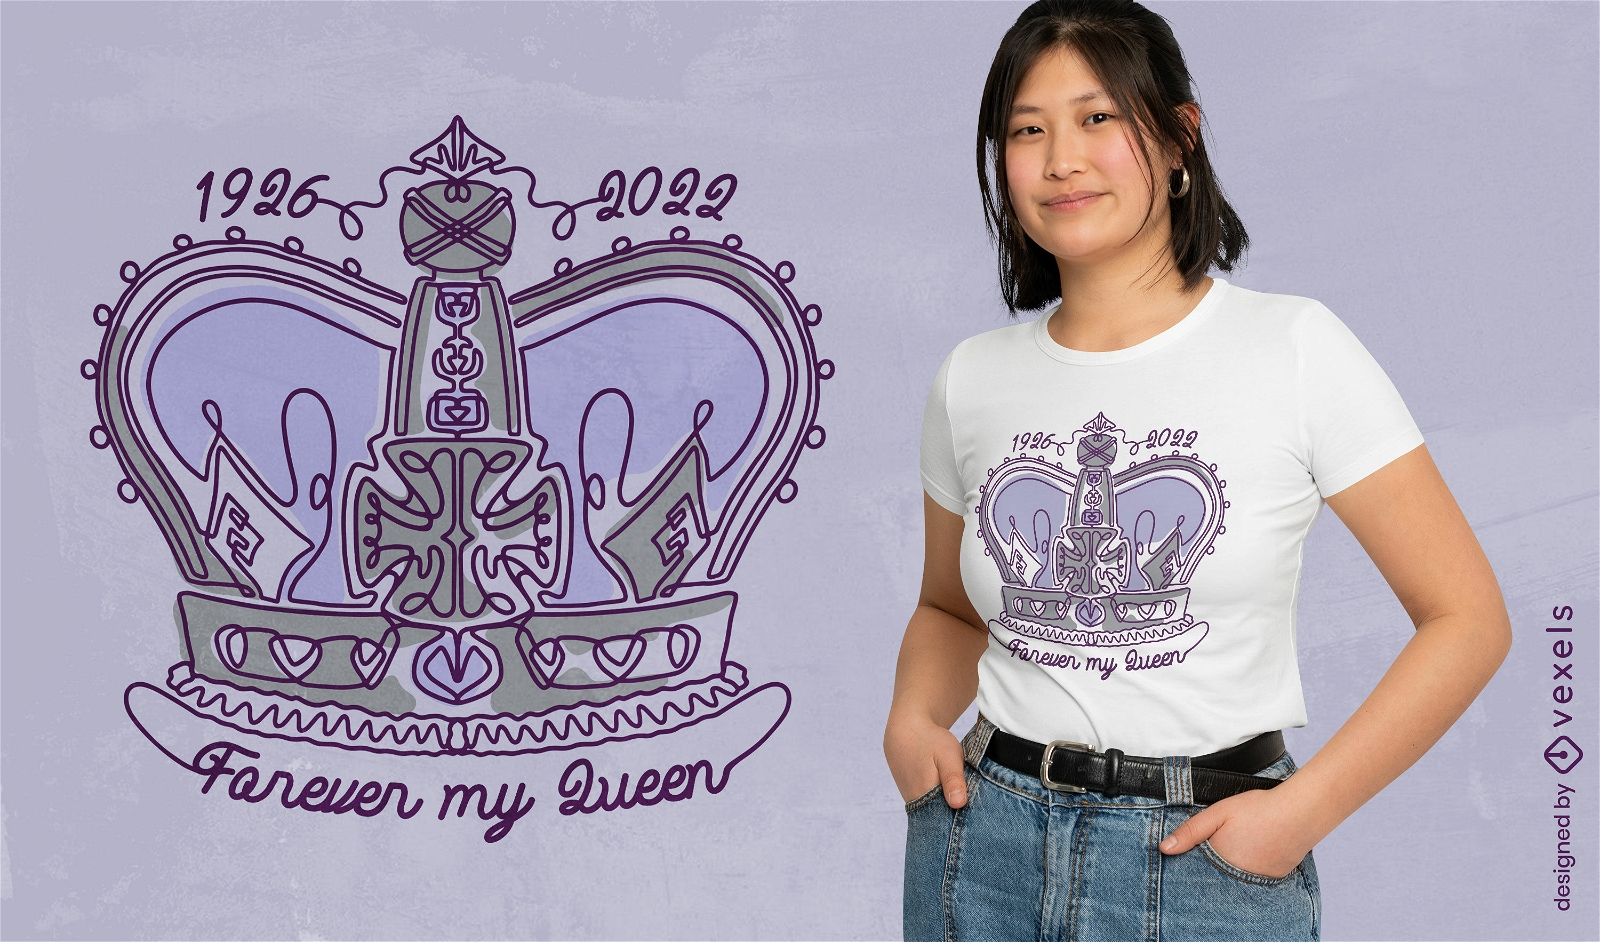 Königin britisches elegantes Kronen-T-Shirt Design